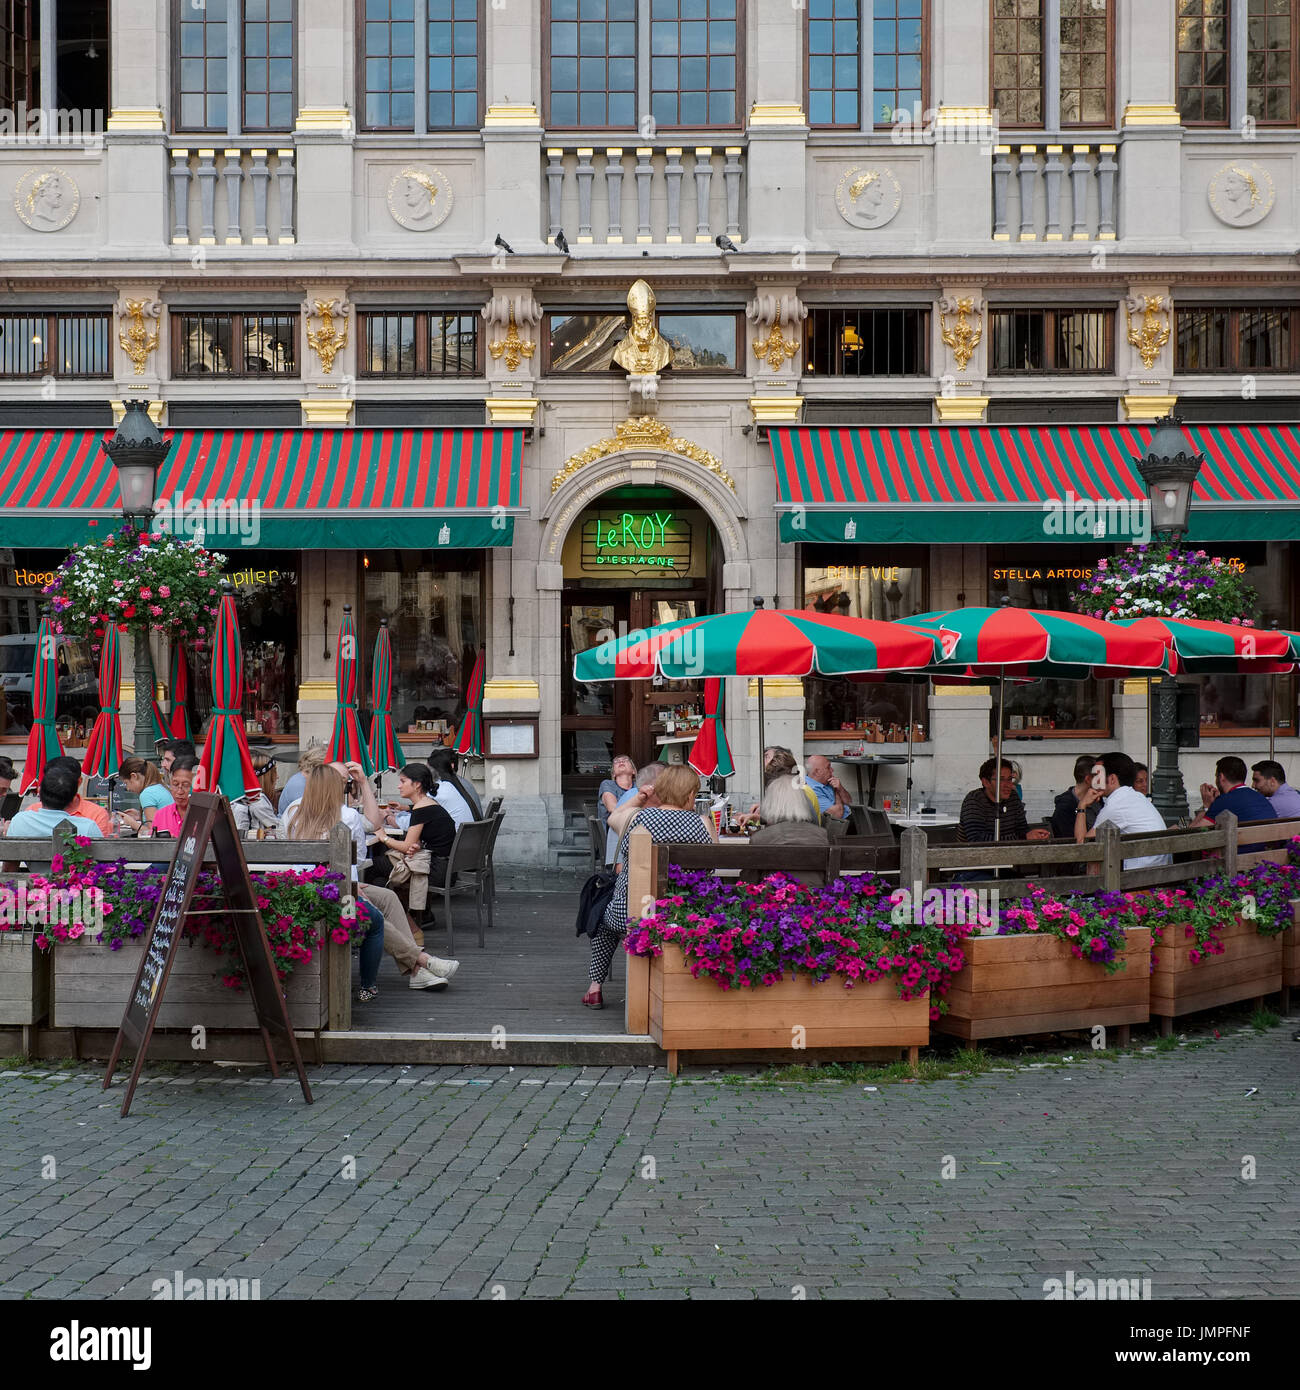 Les gens de déguster une boisson sur la terrasse de la brasserie Le Roy d'Espagne à la Grand Place, dimanche 17 juillet 2016, Bruxelles, Belgique. Banque D'Images